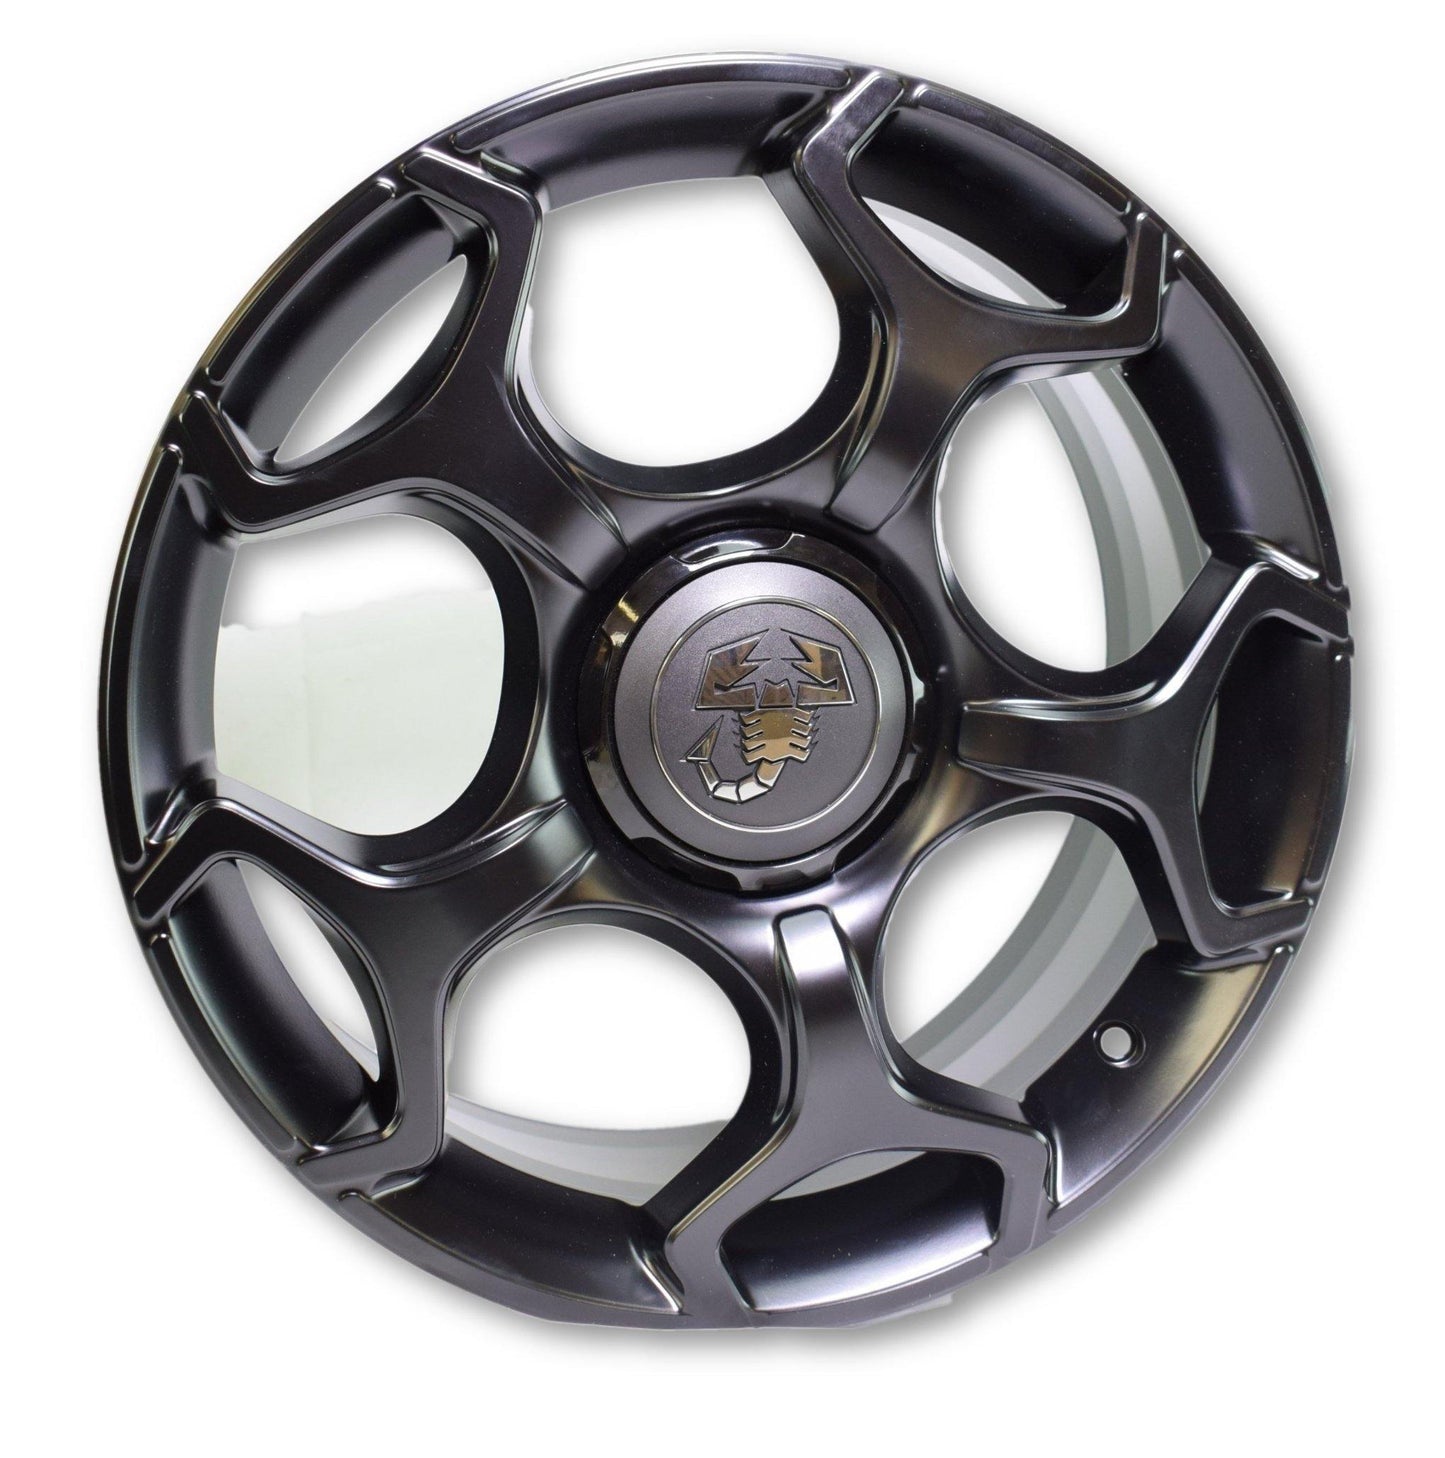 17" Claw Alloy Wheel - Grande Punto & Evo Abarth - Abarth Tuning